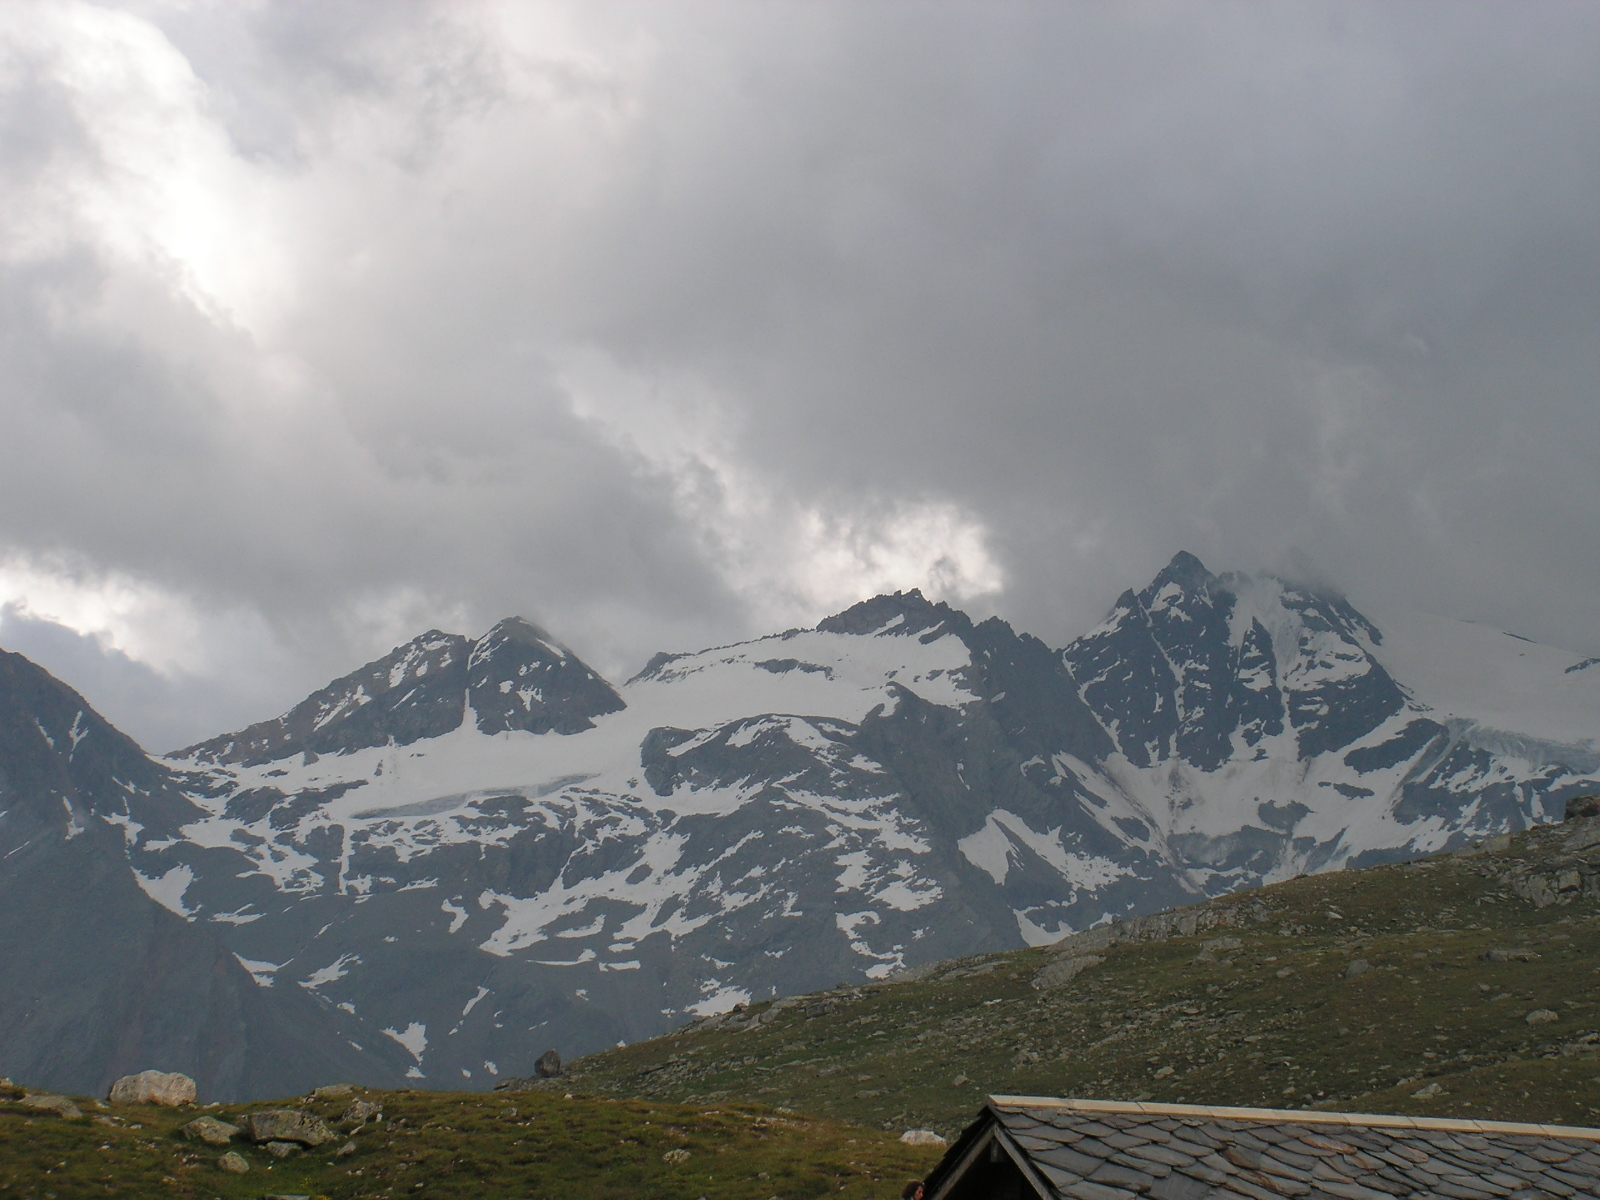 From La Grivola, Aosta, July 09